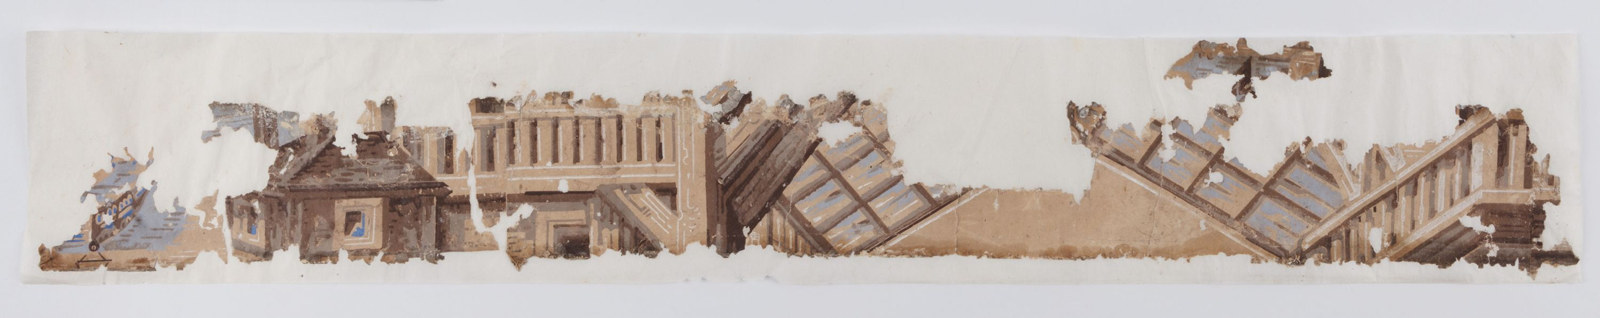 Wallpaper fragment from Blackdown, near Bathurst NSW, c1853